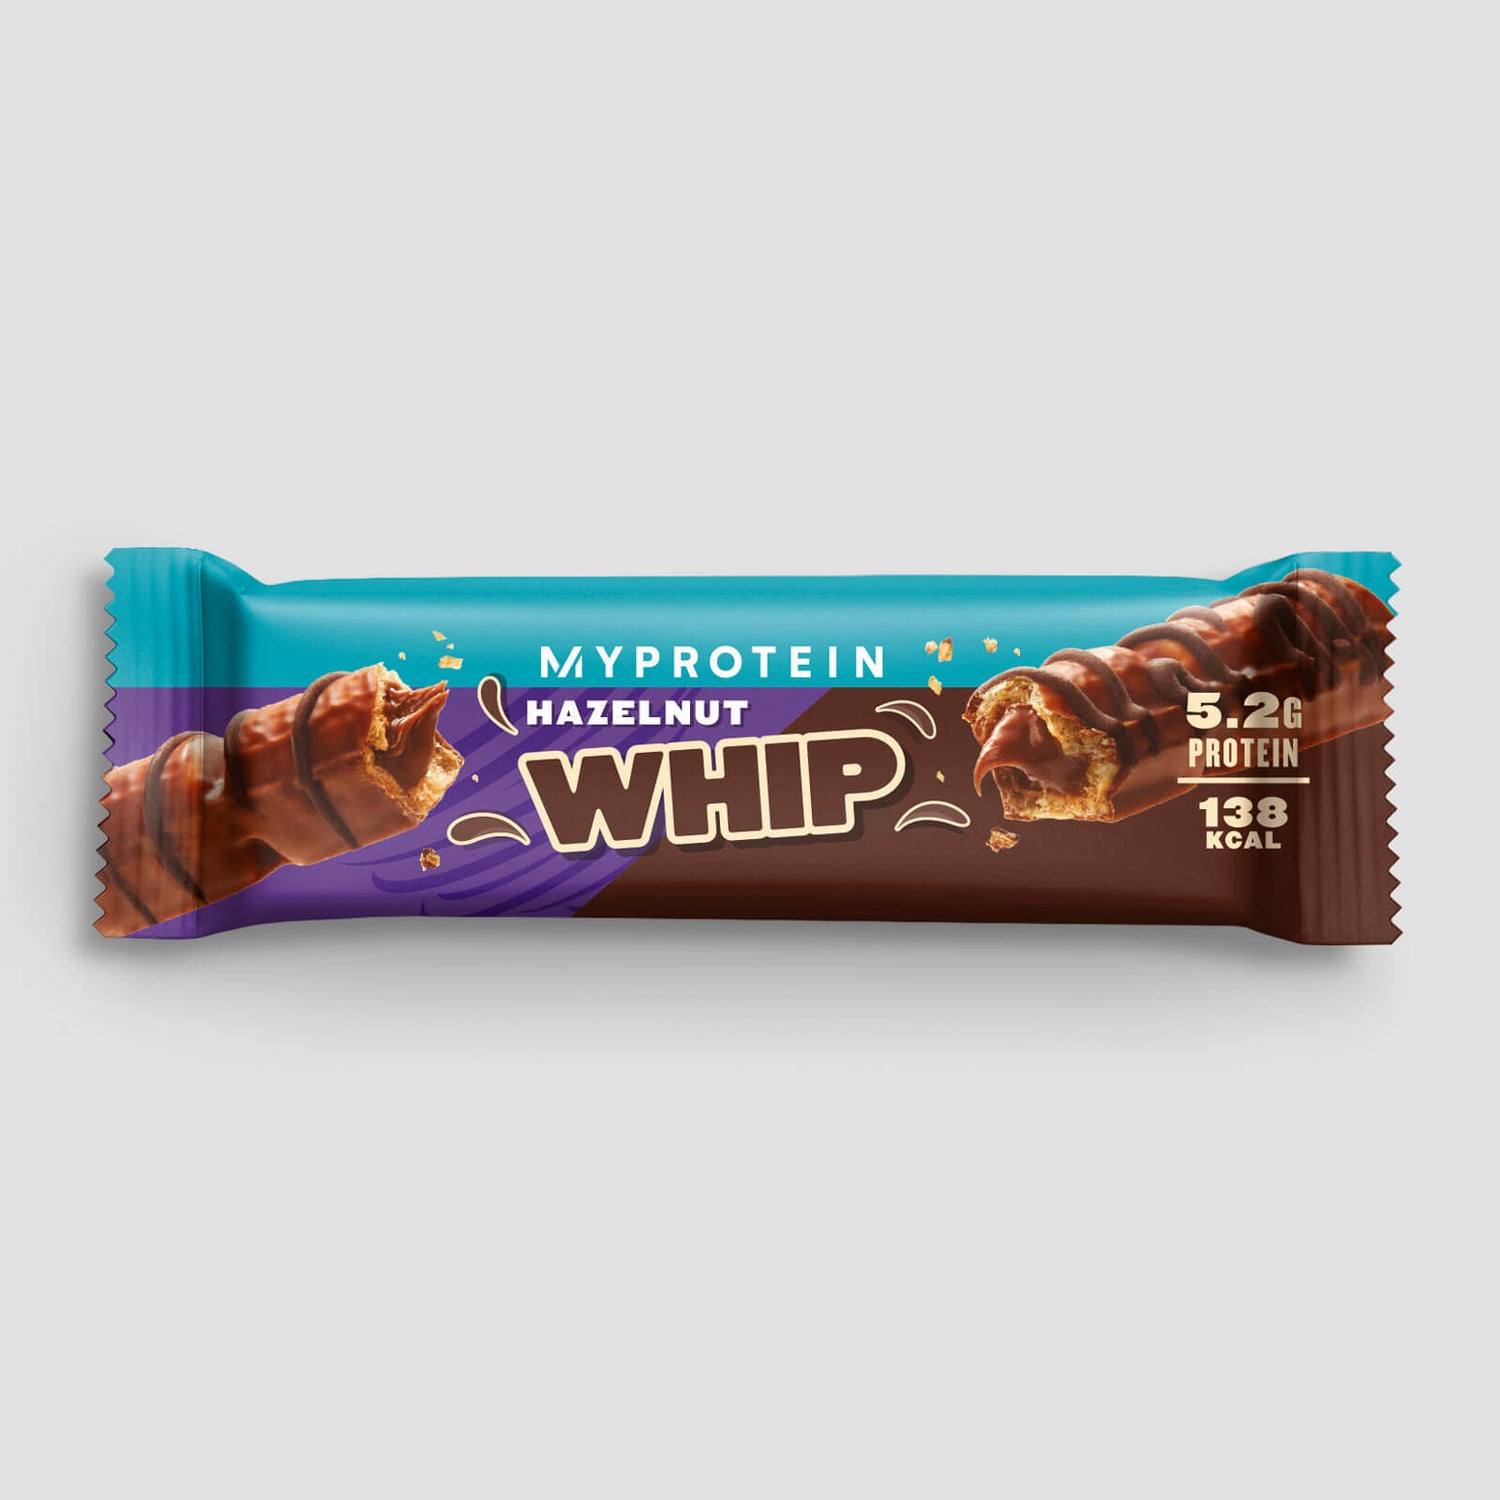 Myprotein Hazelnut Whip (Sample) - 24g - Milch-Schokolade